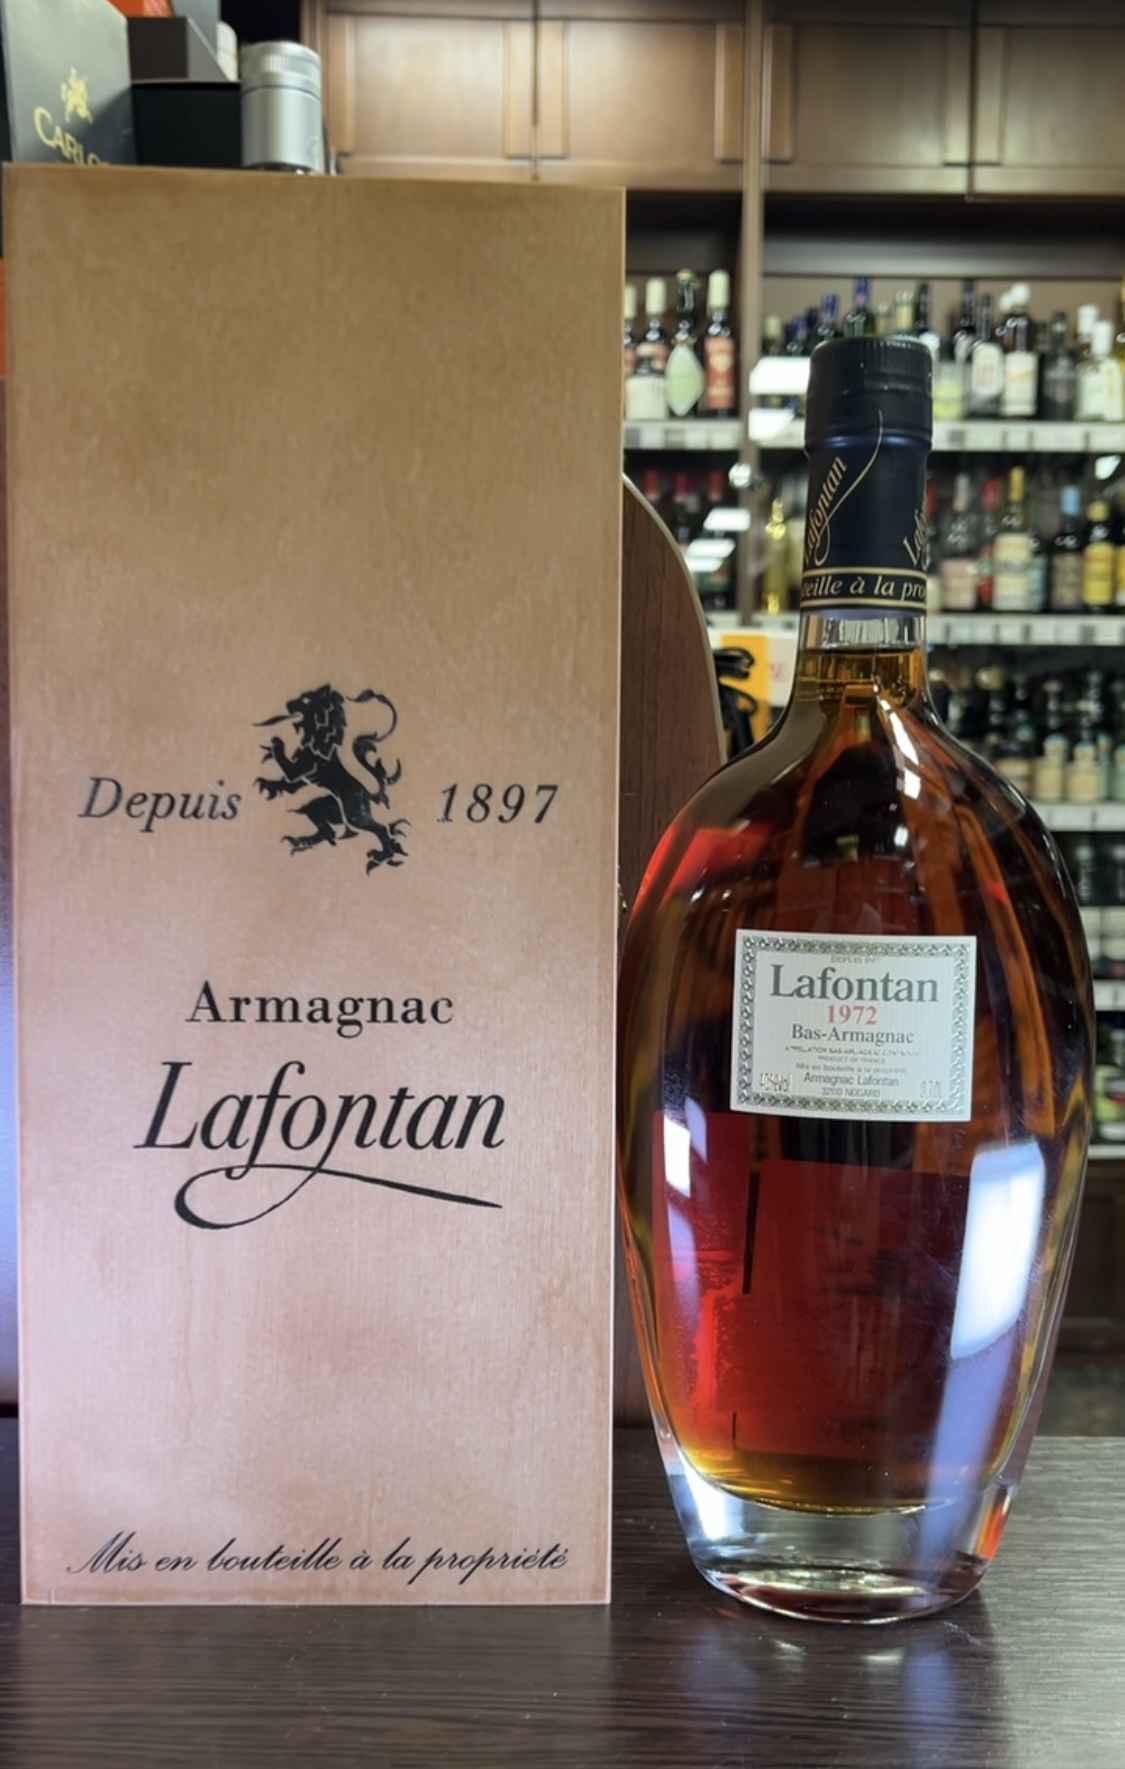 Armagnac Lafontan 1972 years Арманьяк Лафонтан 1972 года 0.7л в деревянной упаковке